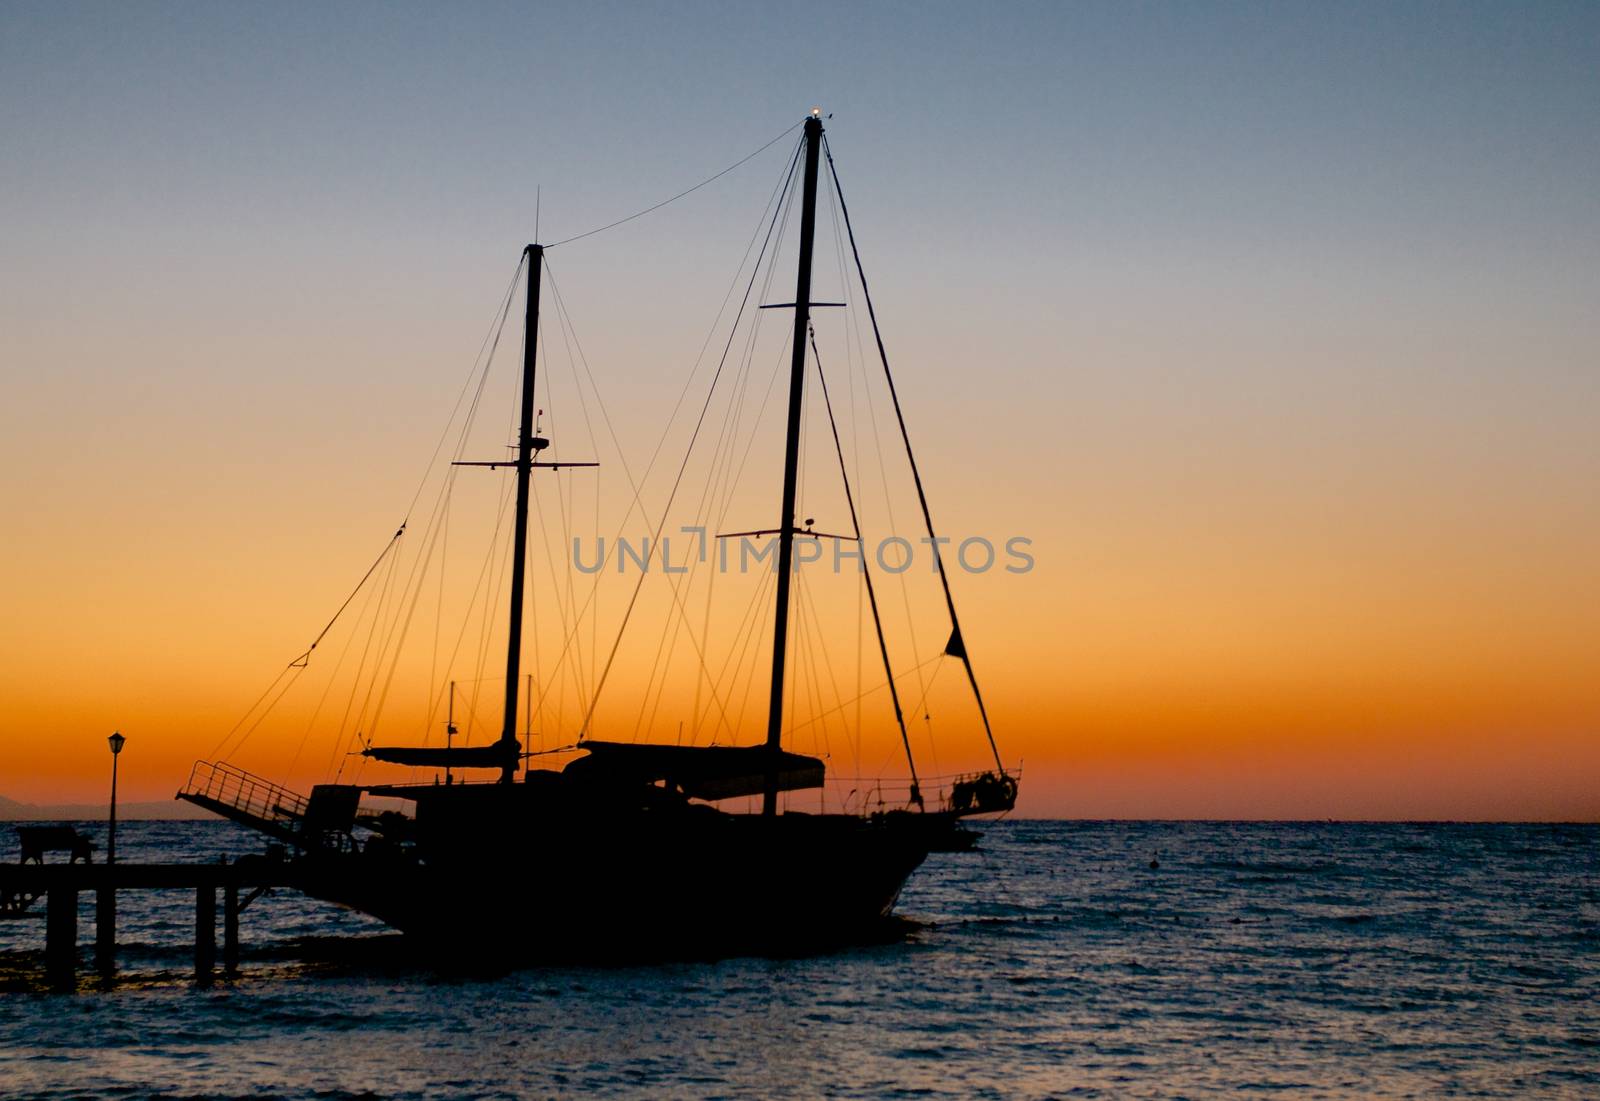 Sailing Ship on Sunrise  by zhekos